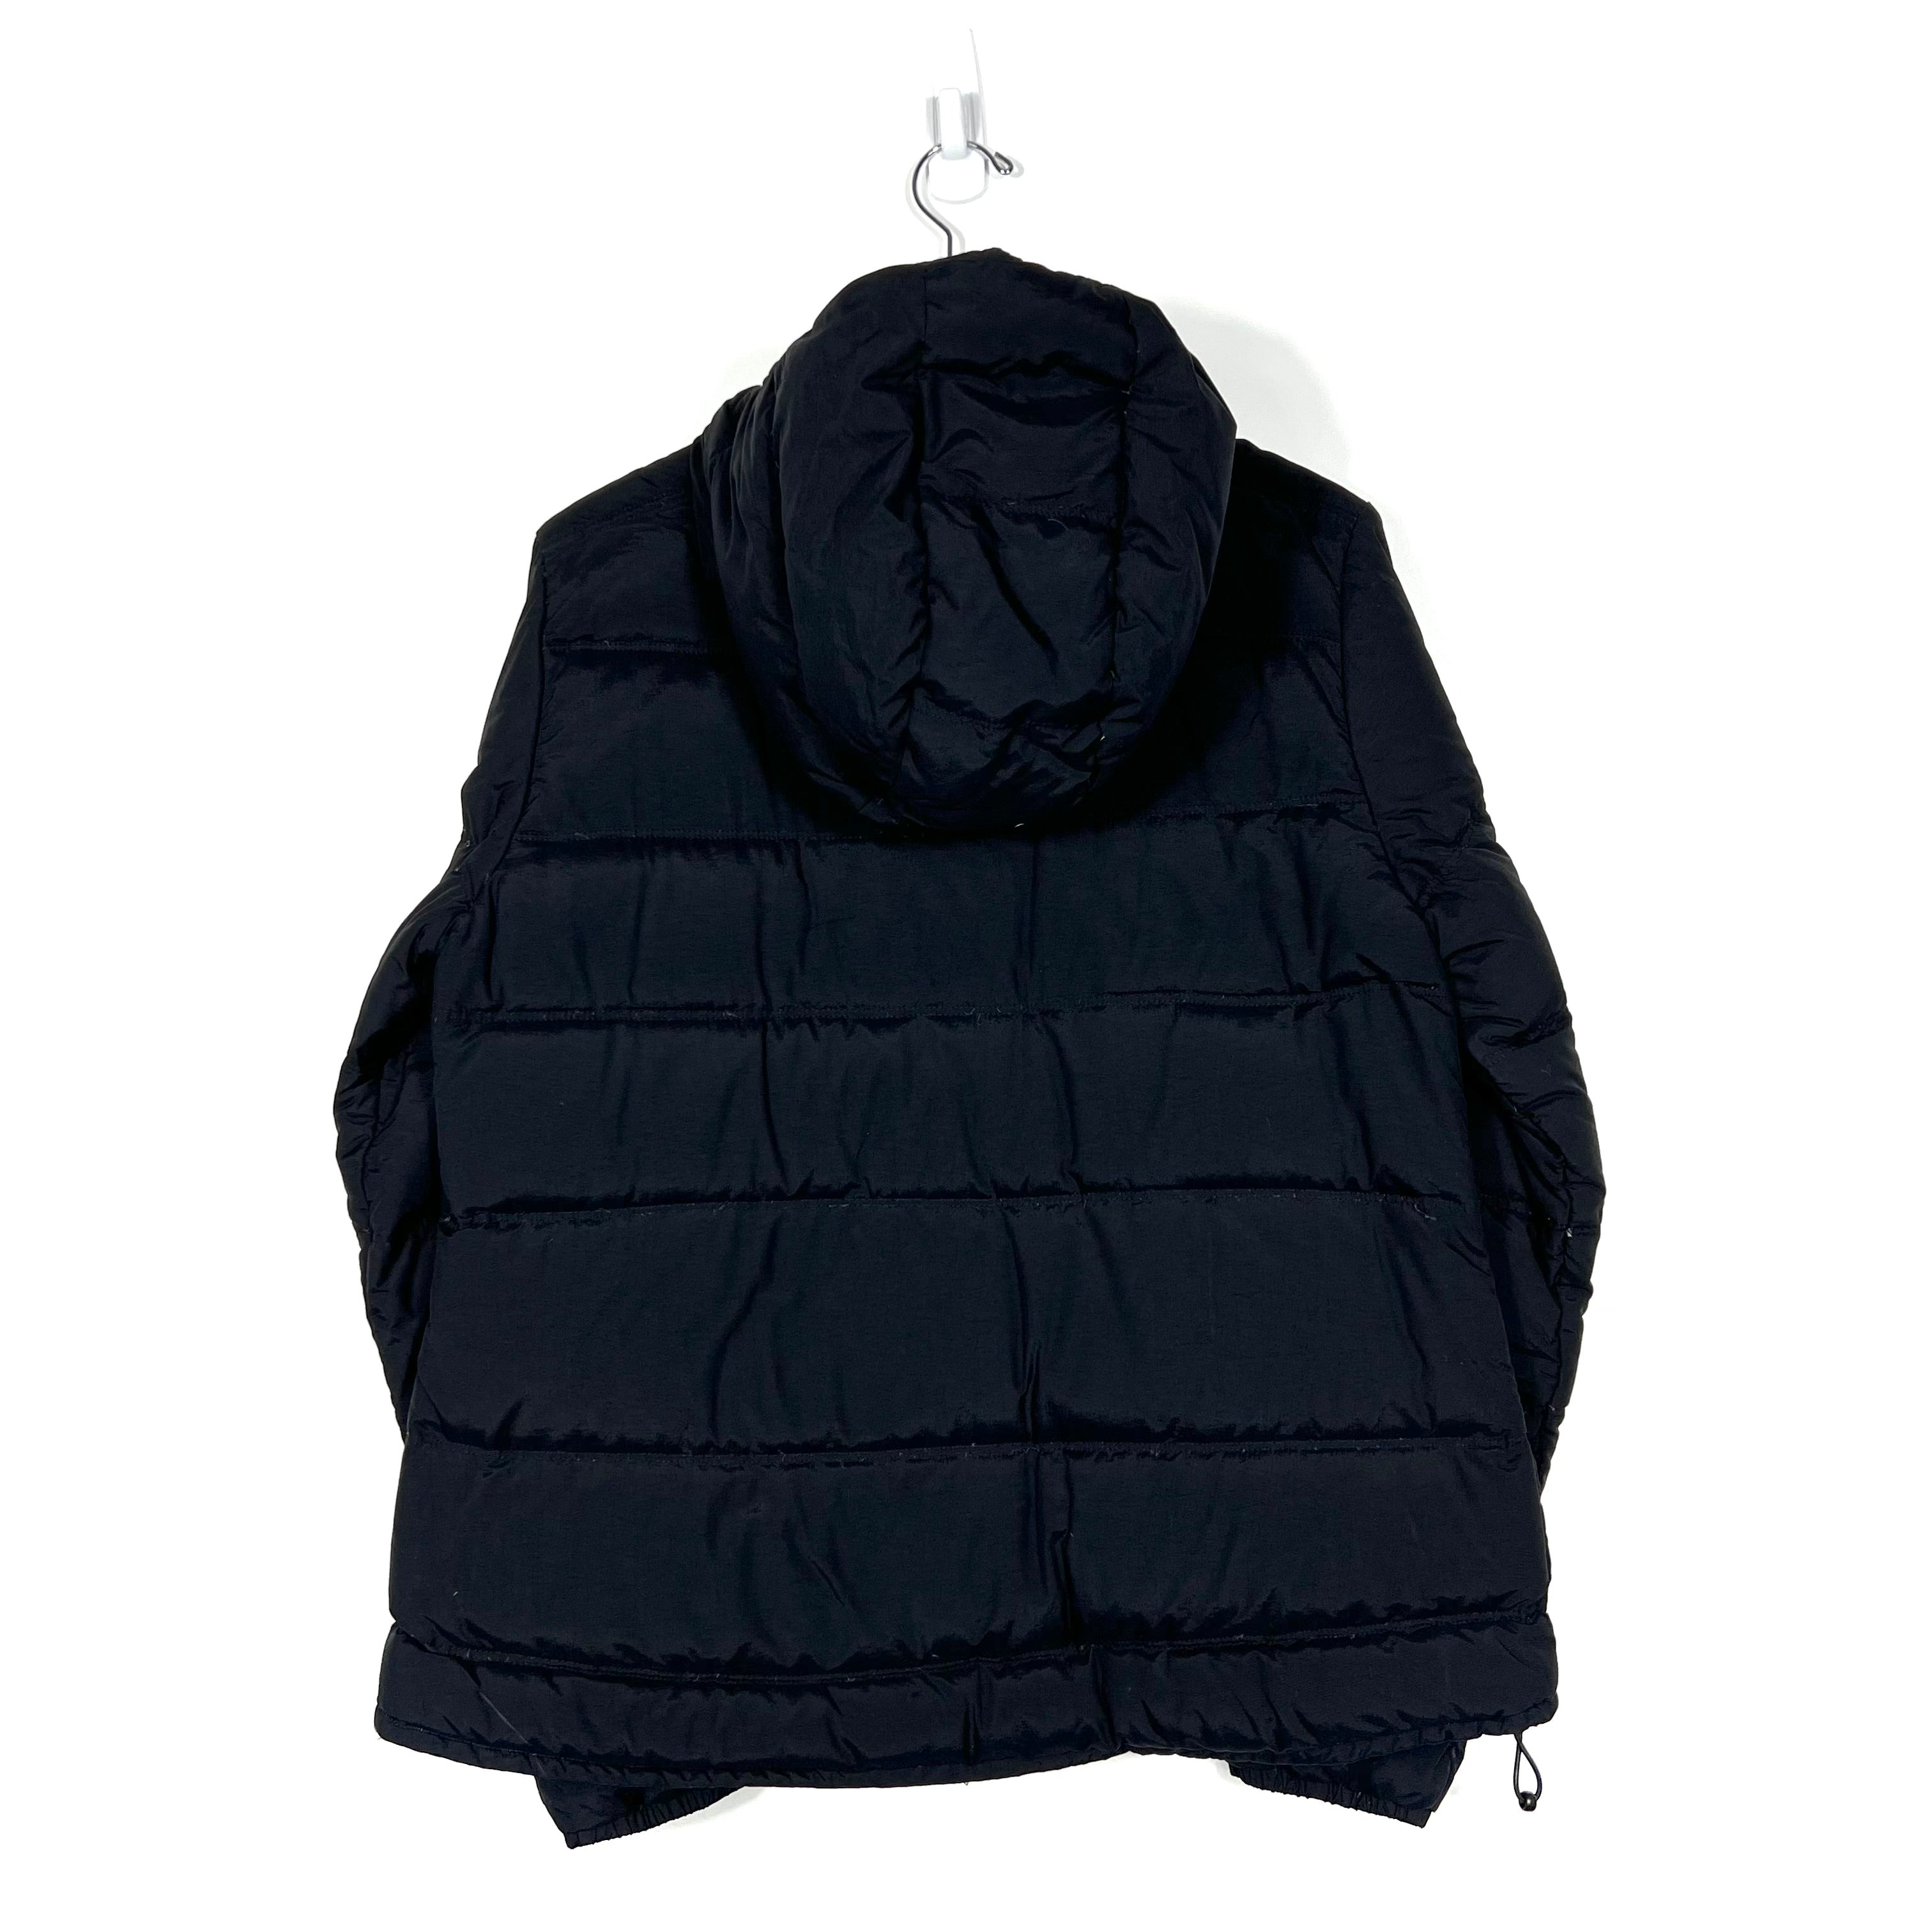 Carhartt Puffer Jacket - Women's Large